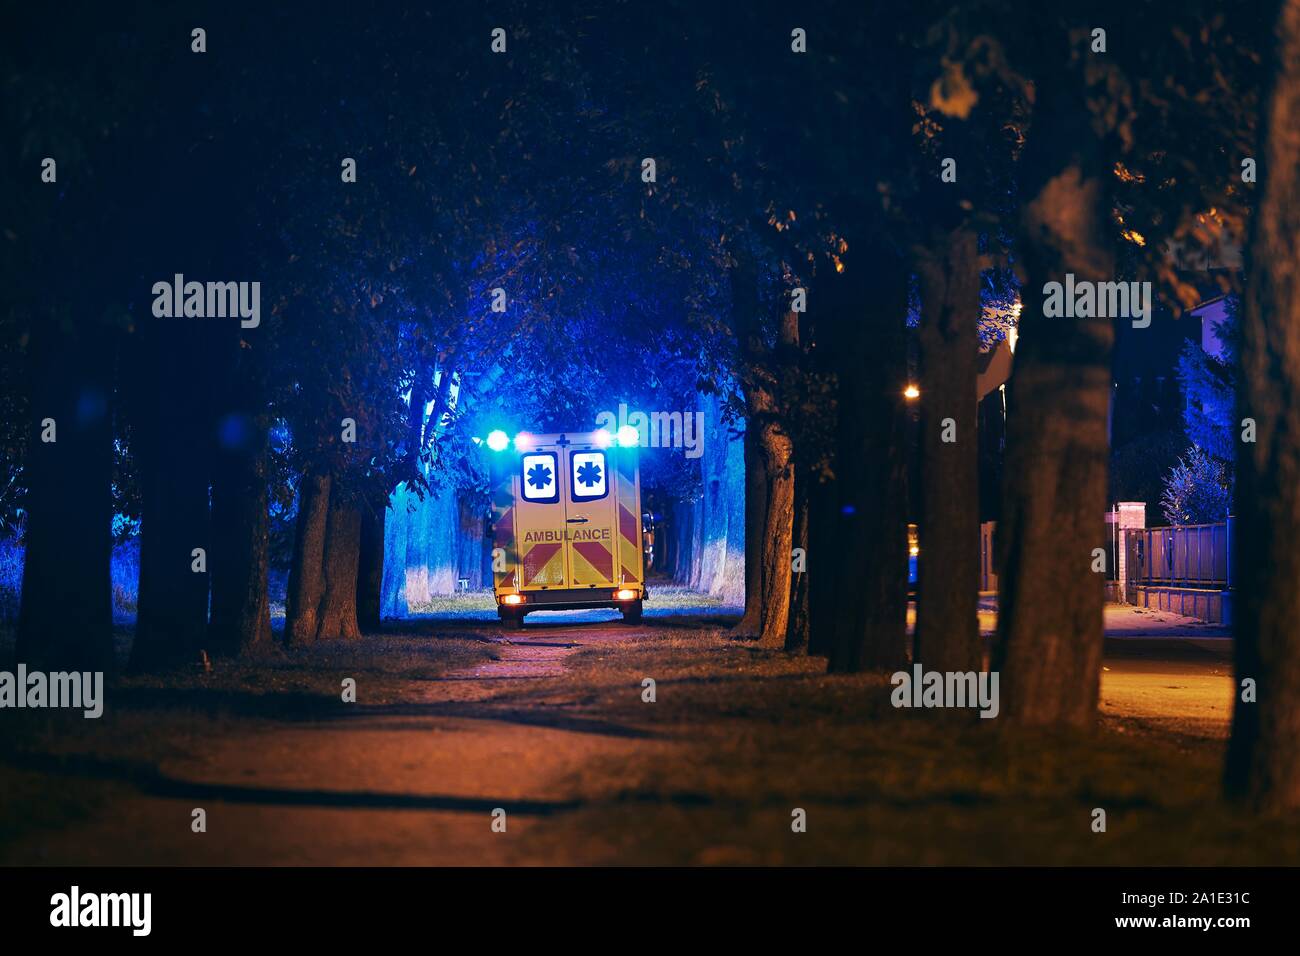 Salvataggio nel buio vicolo della città. Vista posteriore di ambulanza del servizio di emergenza medica contro gli alberi illuminati dal blu del lampeggiatore. Foto Stock